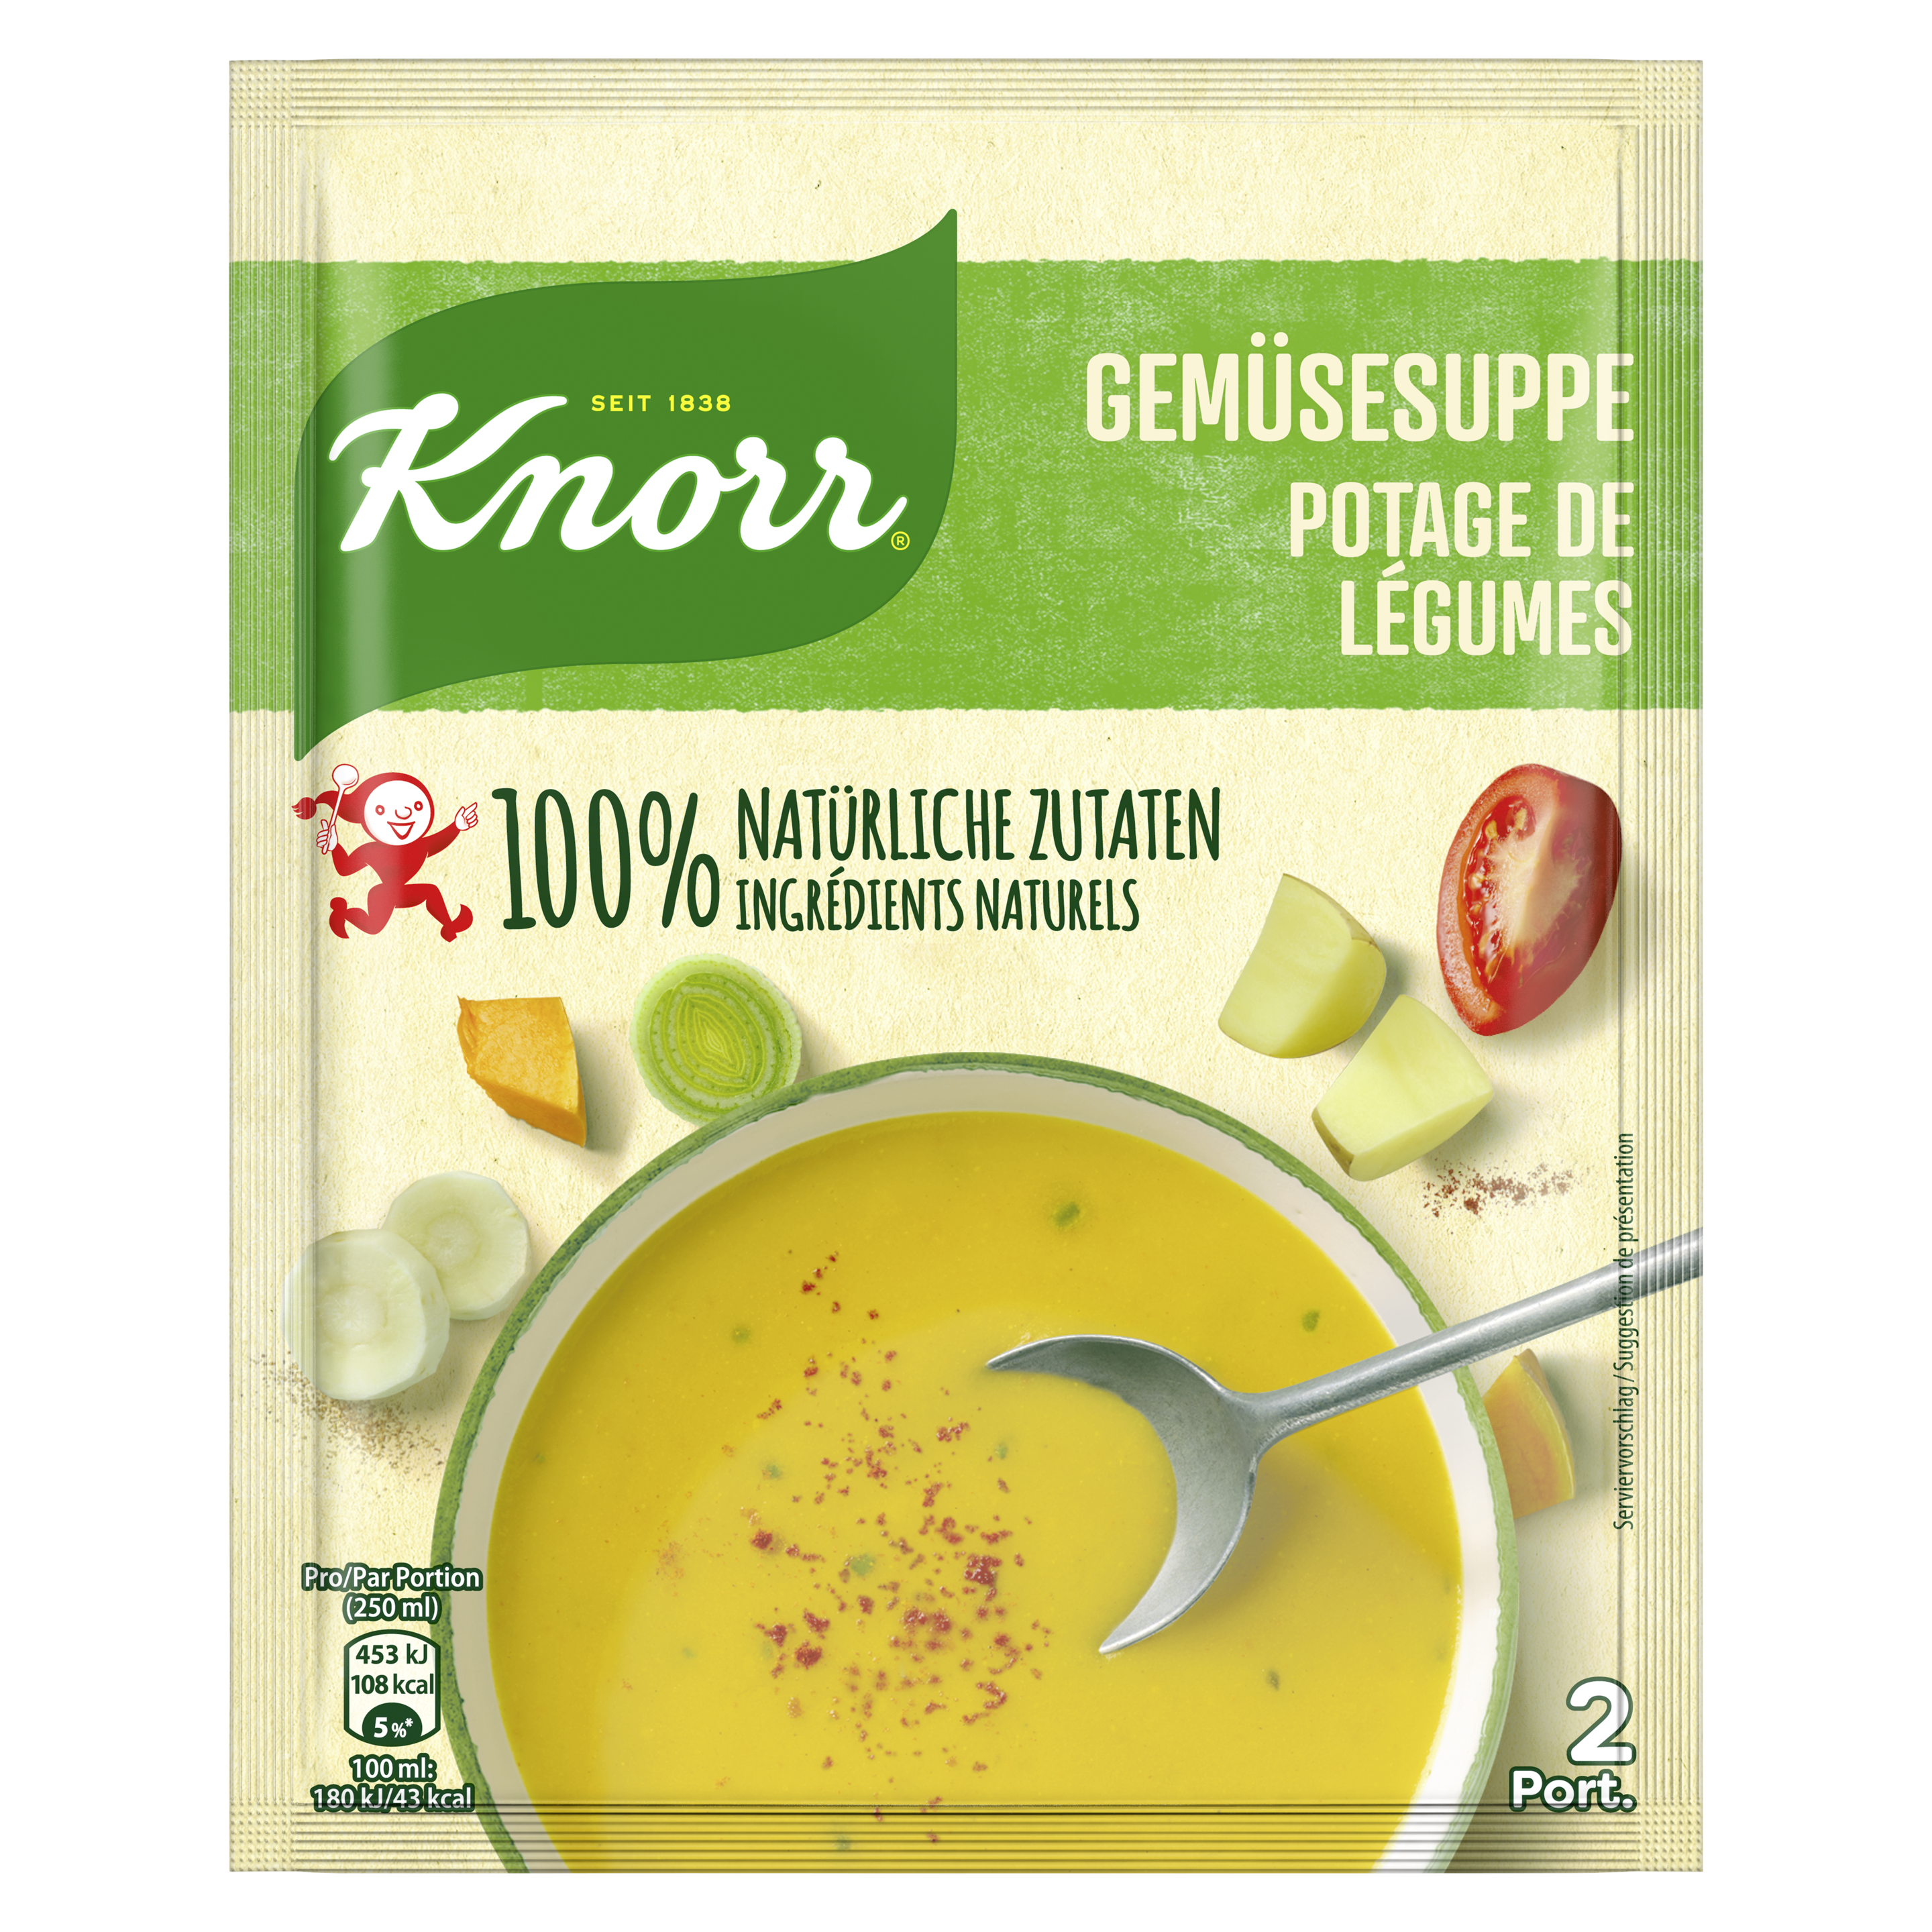 KNORR ingrédients 100% naturels Potage de légumes sachet 2 portions